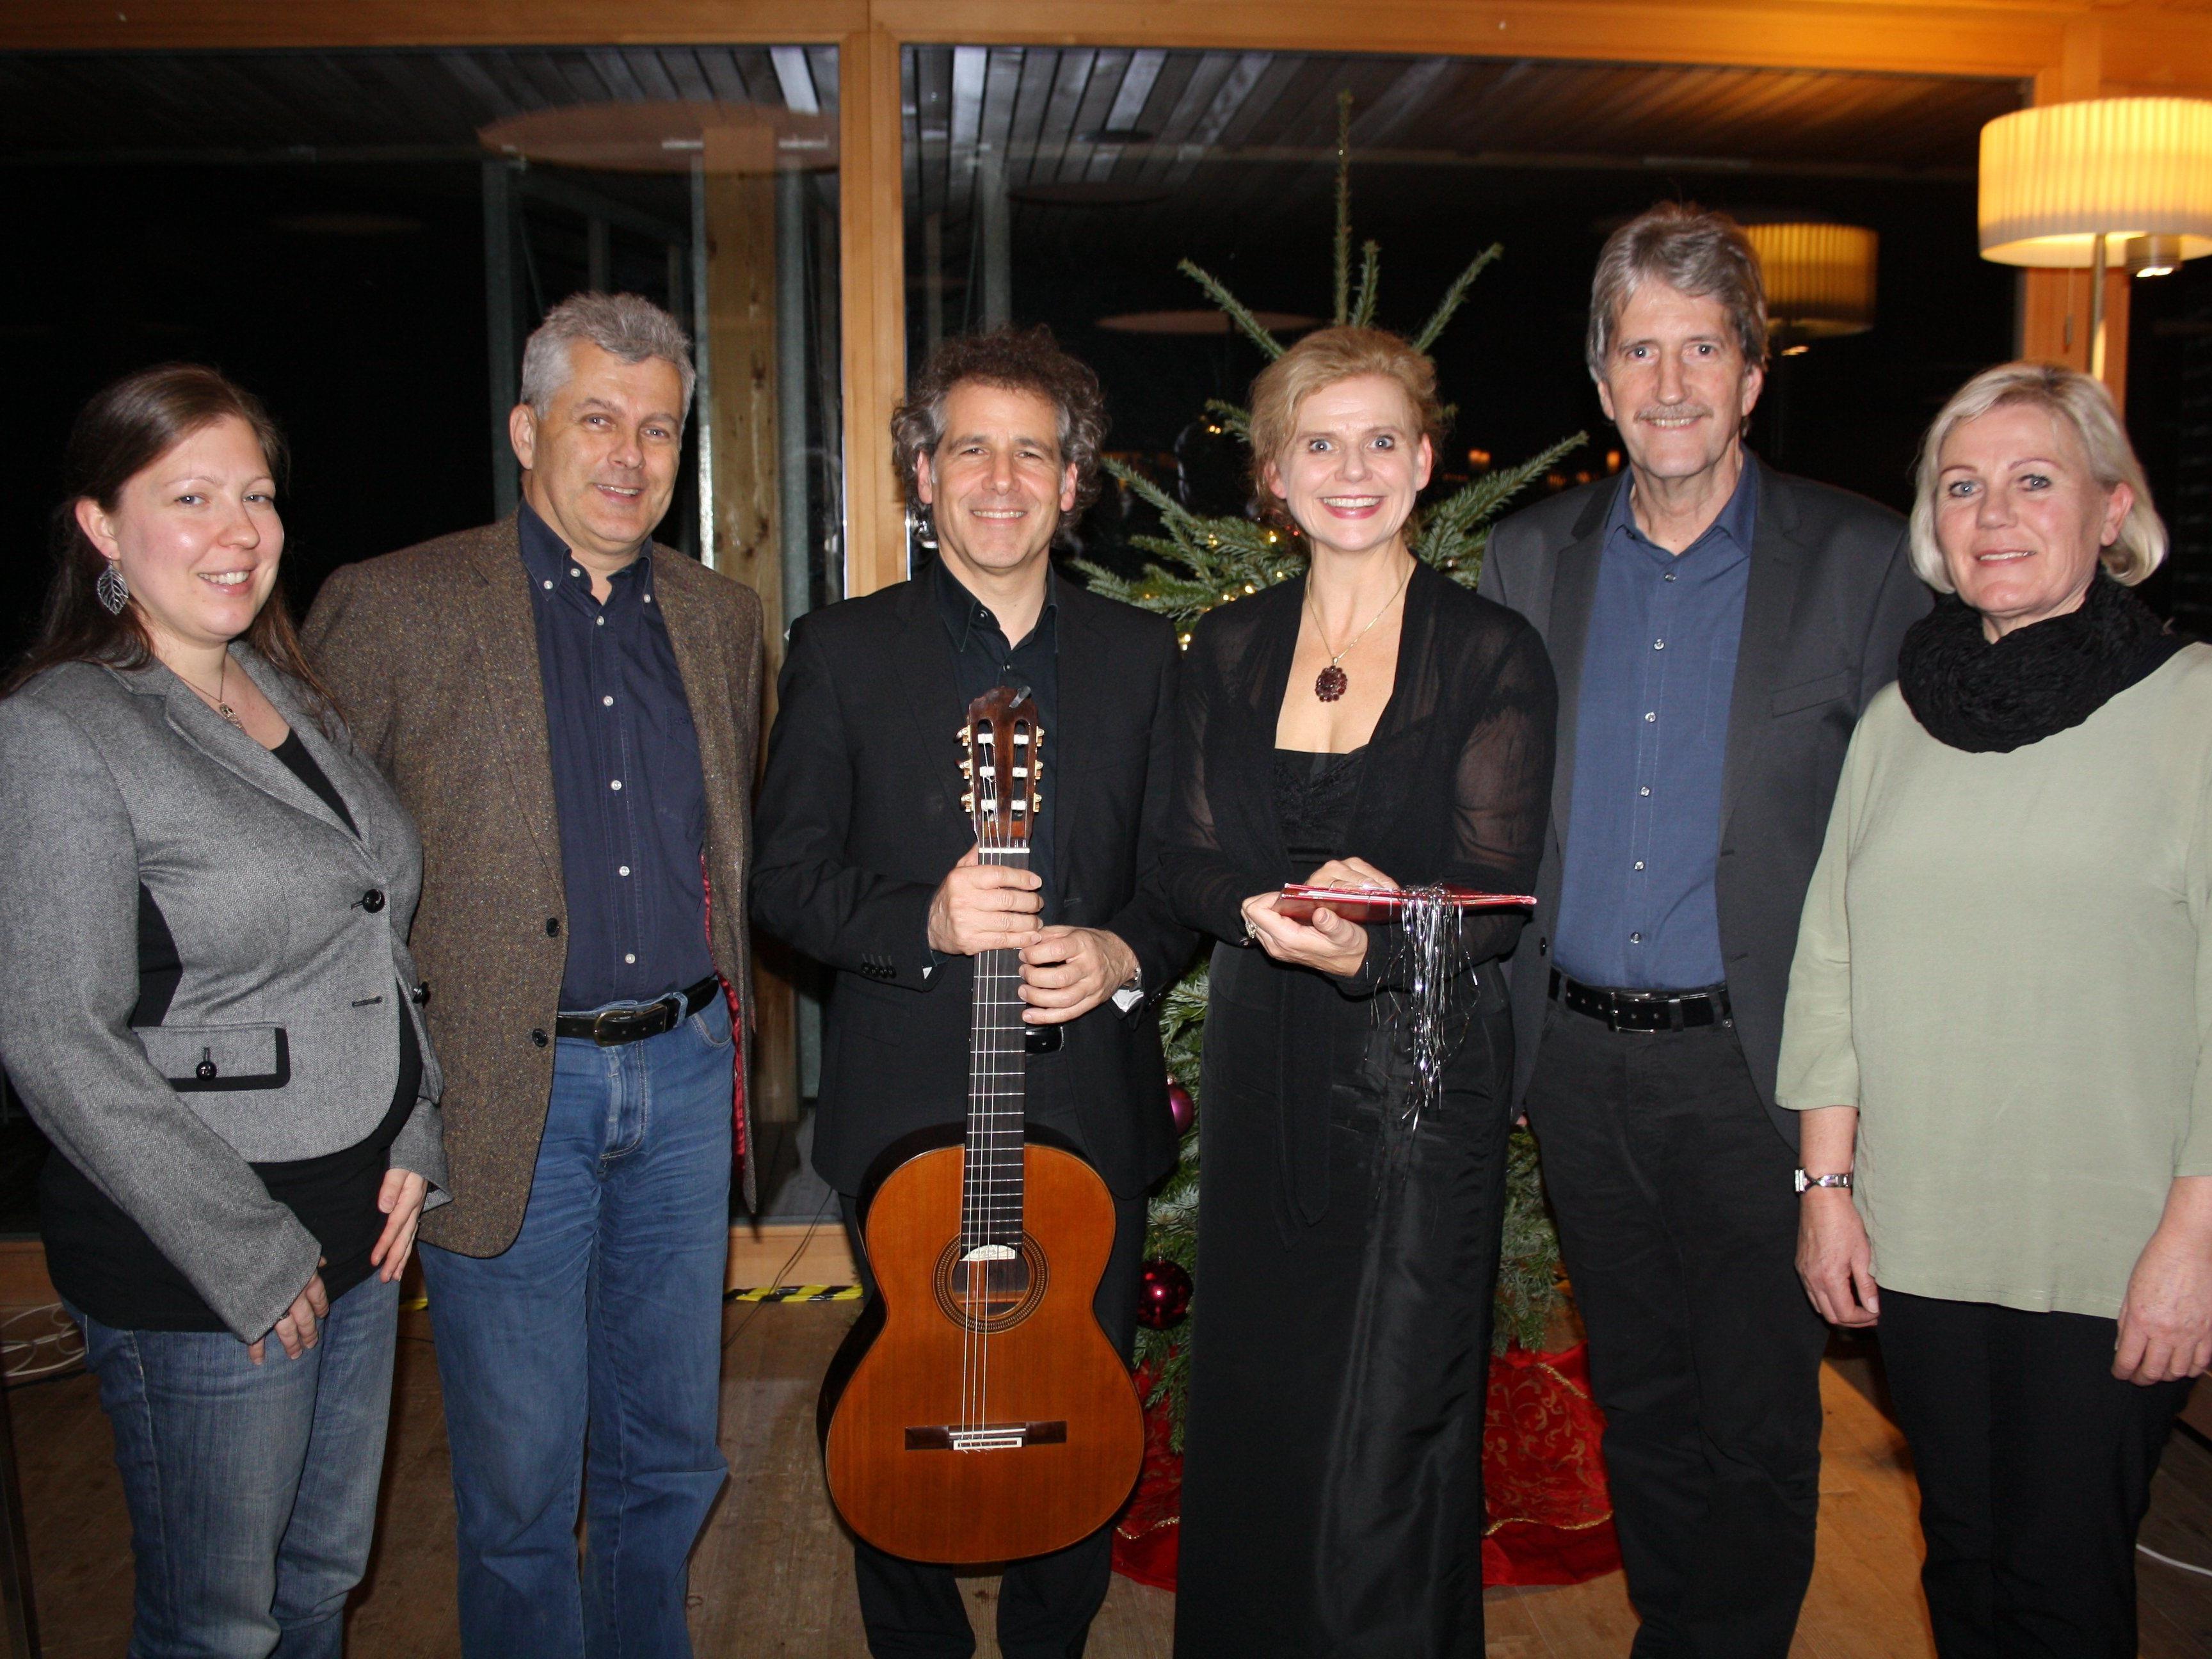 Zusammen mit den Mitgliedern des Lochauer Kulturausschusses mit Obfrau Vera Fechtig freuten sich Renate Bauer (Rezitation) und Alexander Swete (Gitarre) über einen wiederum sehr stimmungsvollen „Schloss Hofener Advent 2015“.